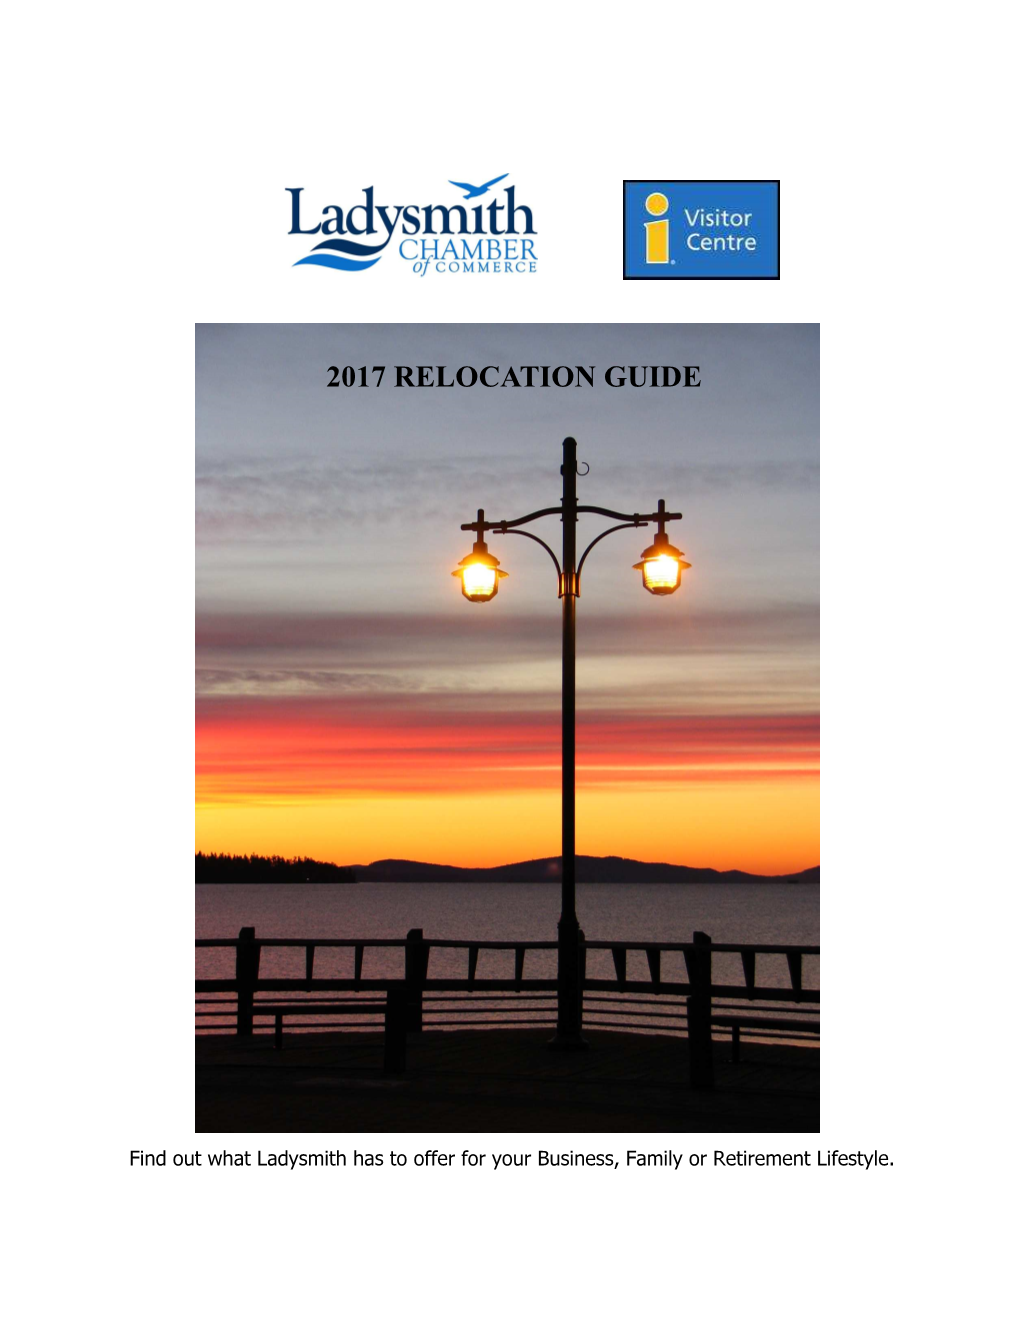 Ladysmith Relocation Guide 2017.Pub